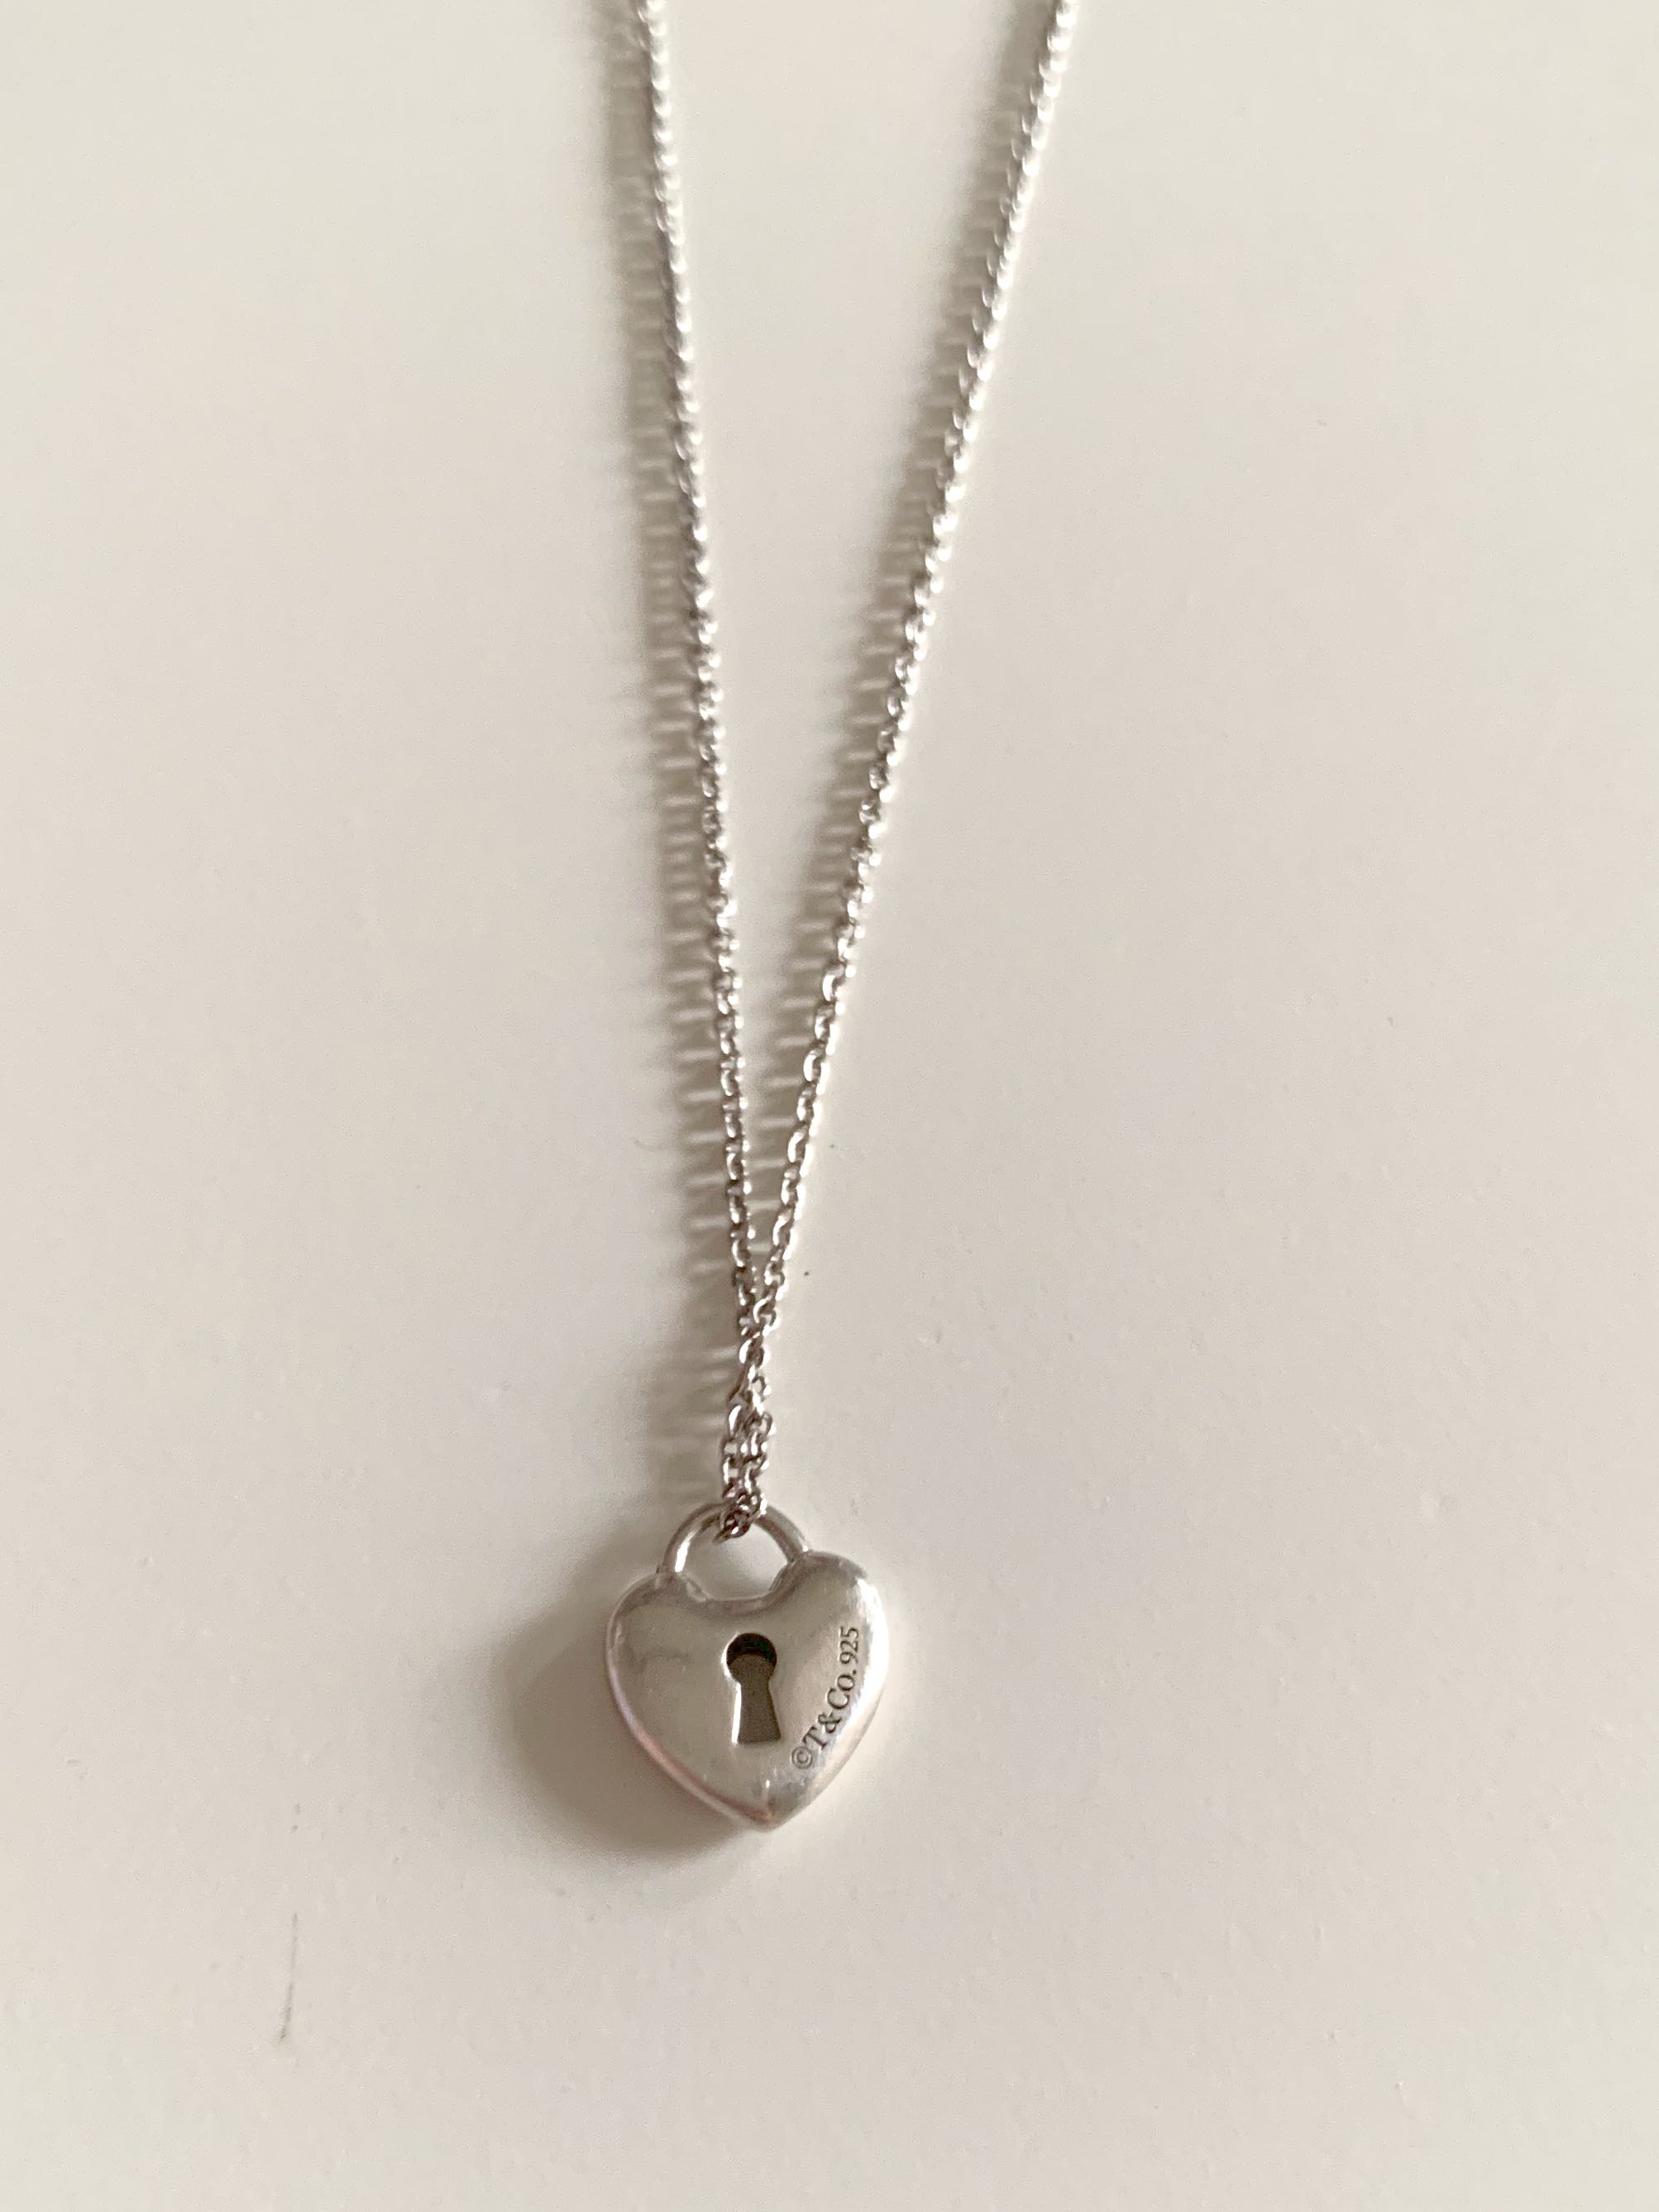 tiffany heart padlock necklace